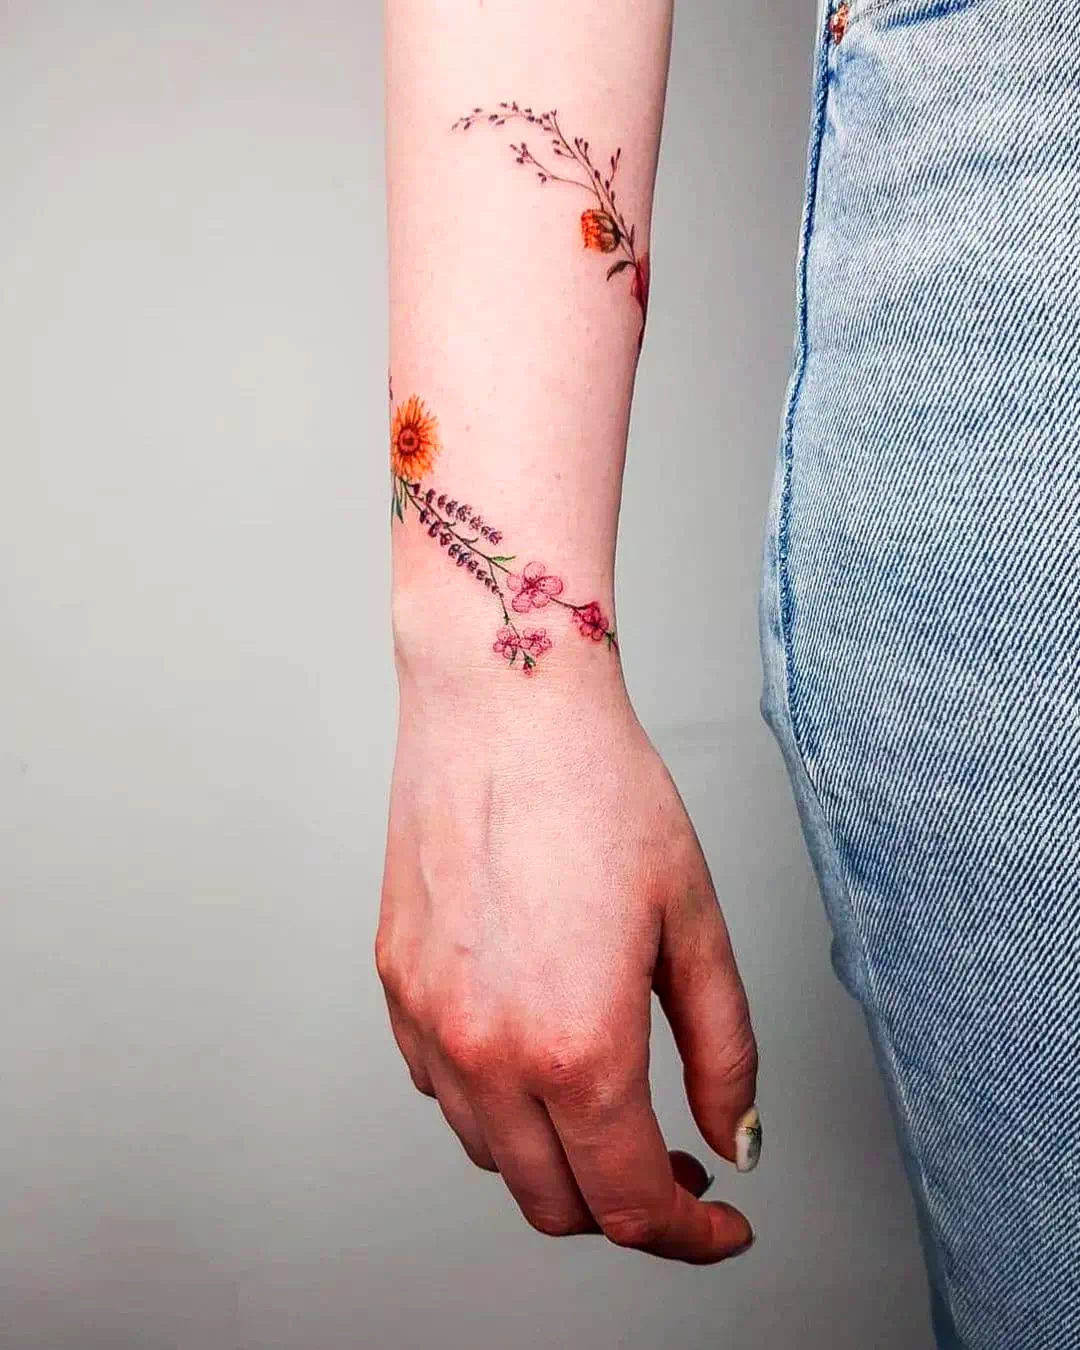 Tatuaje de una flor en una pulsera pequeña de color púrpura